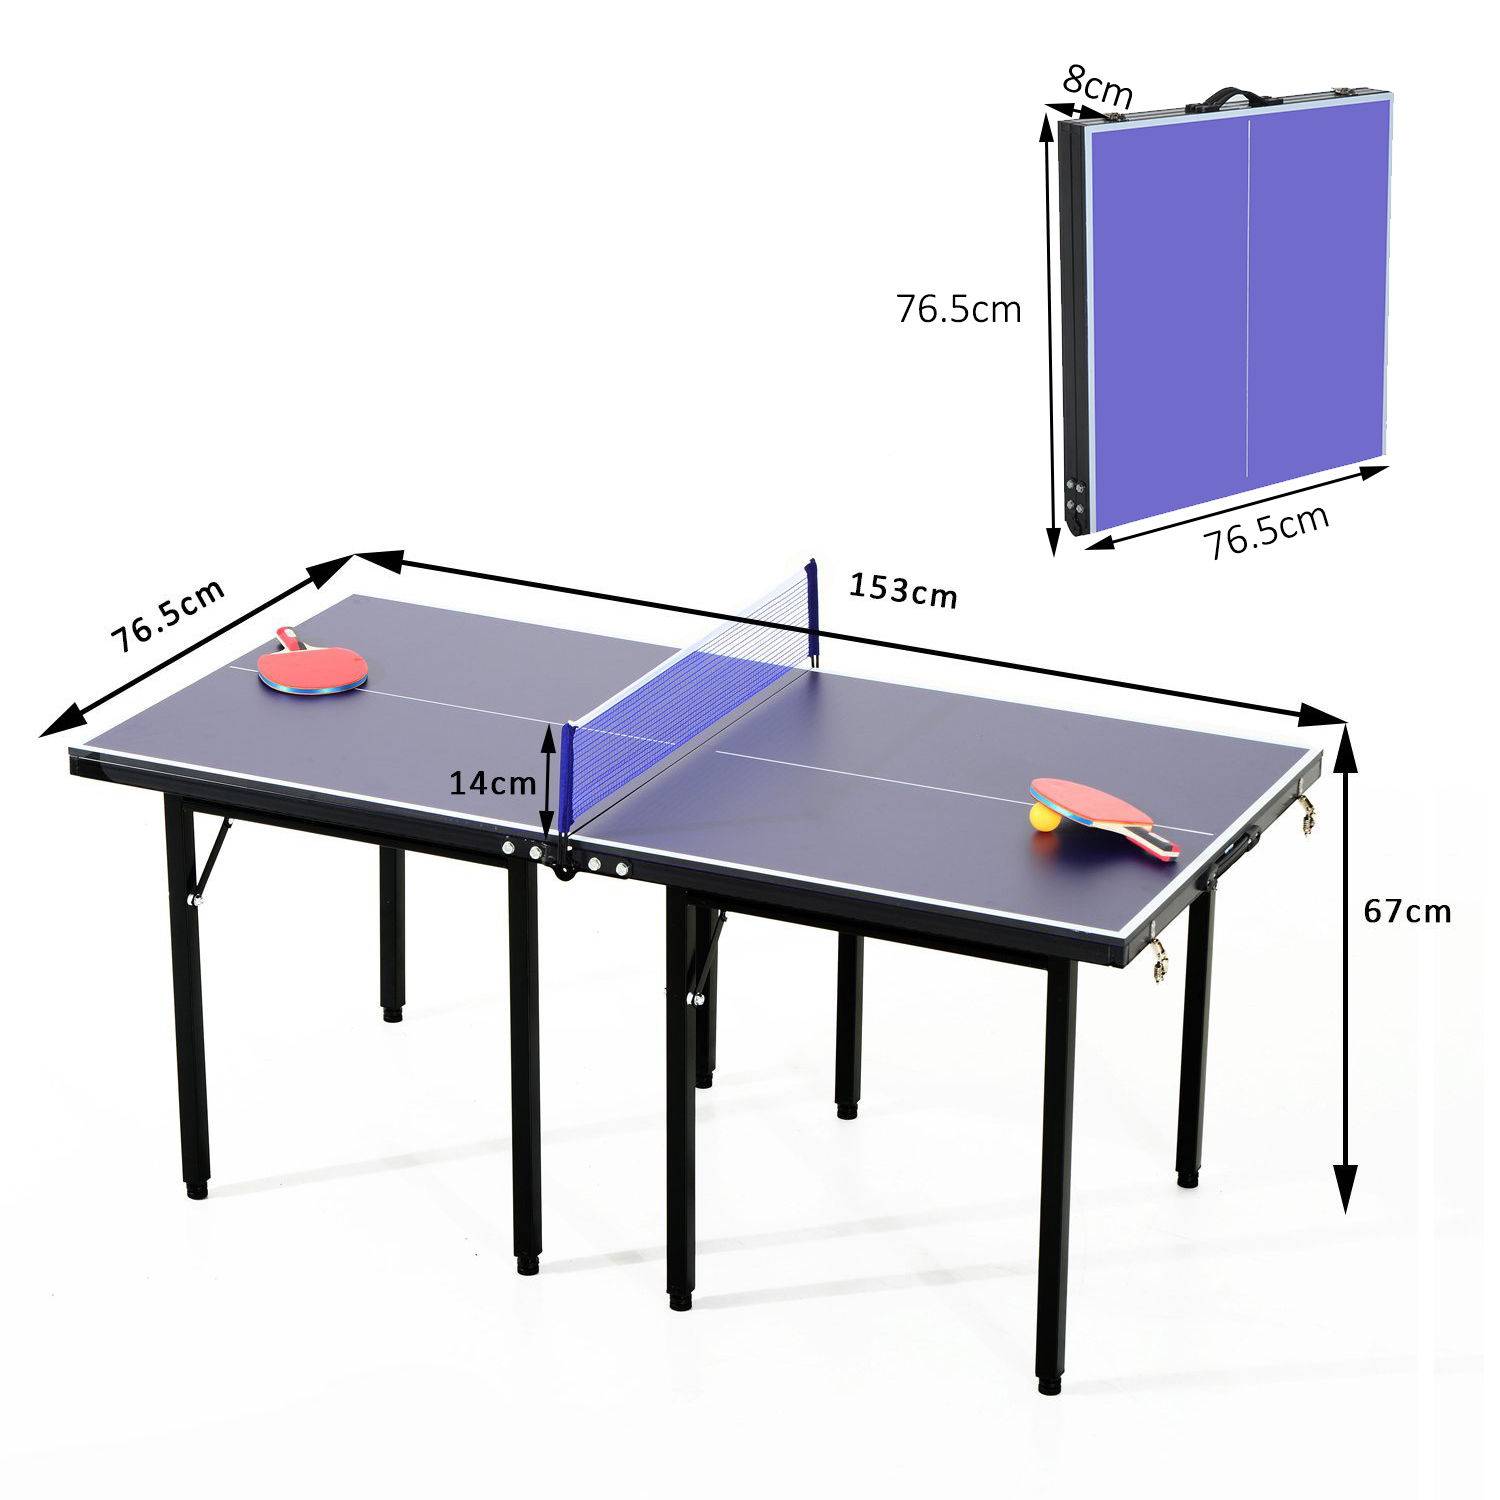 Стол для пинпонга. Мини стол для пинг понга. Теннисный стол Юниор. Стол для настольного тенниса Юниор. Стол для ПИНКПОНГА 1,5/1,5.